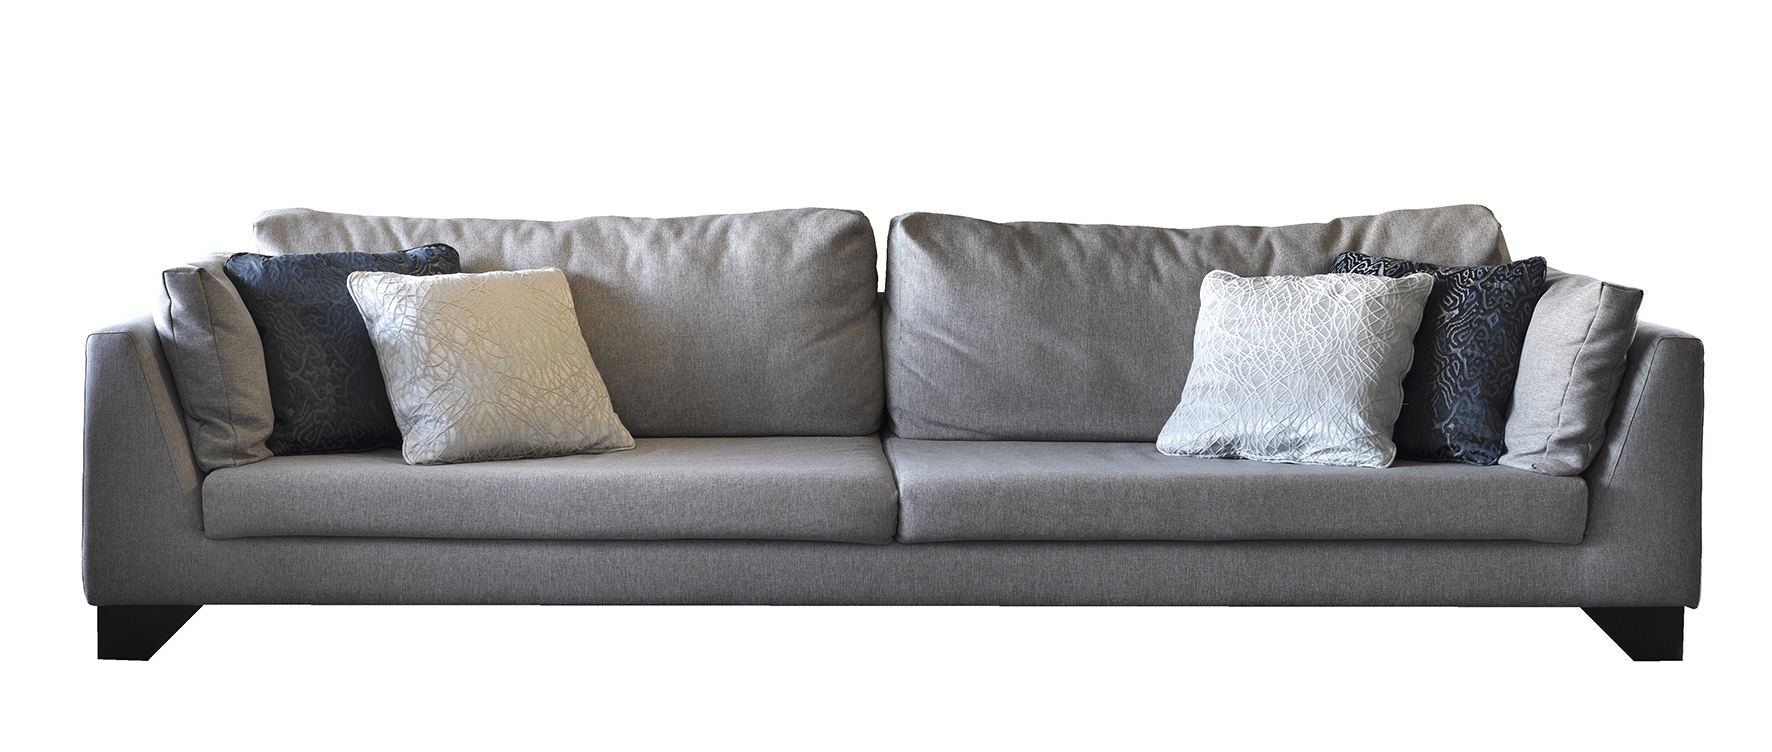 contemporary sofa, modern sofa, luxury living room sofa